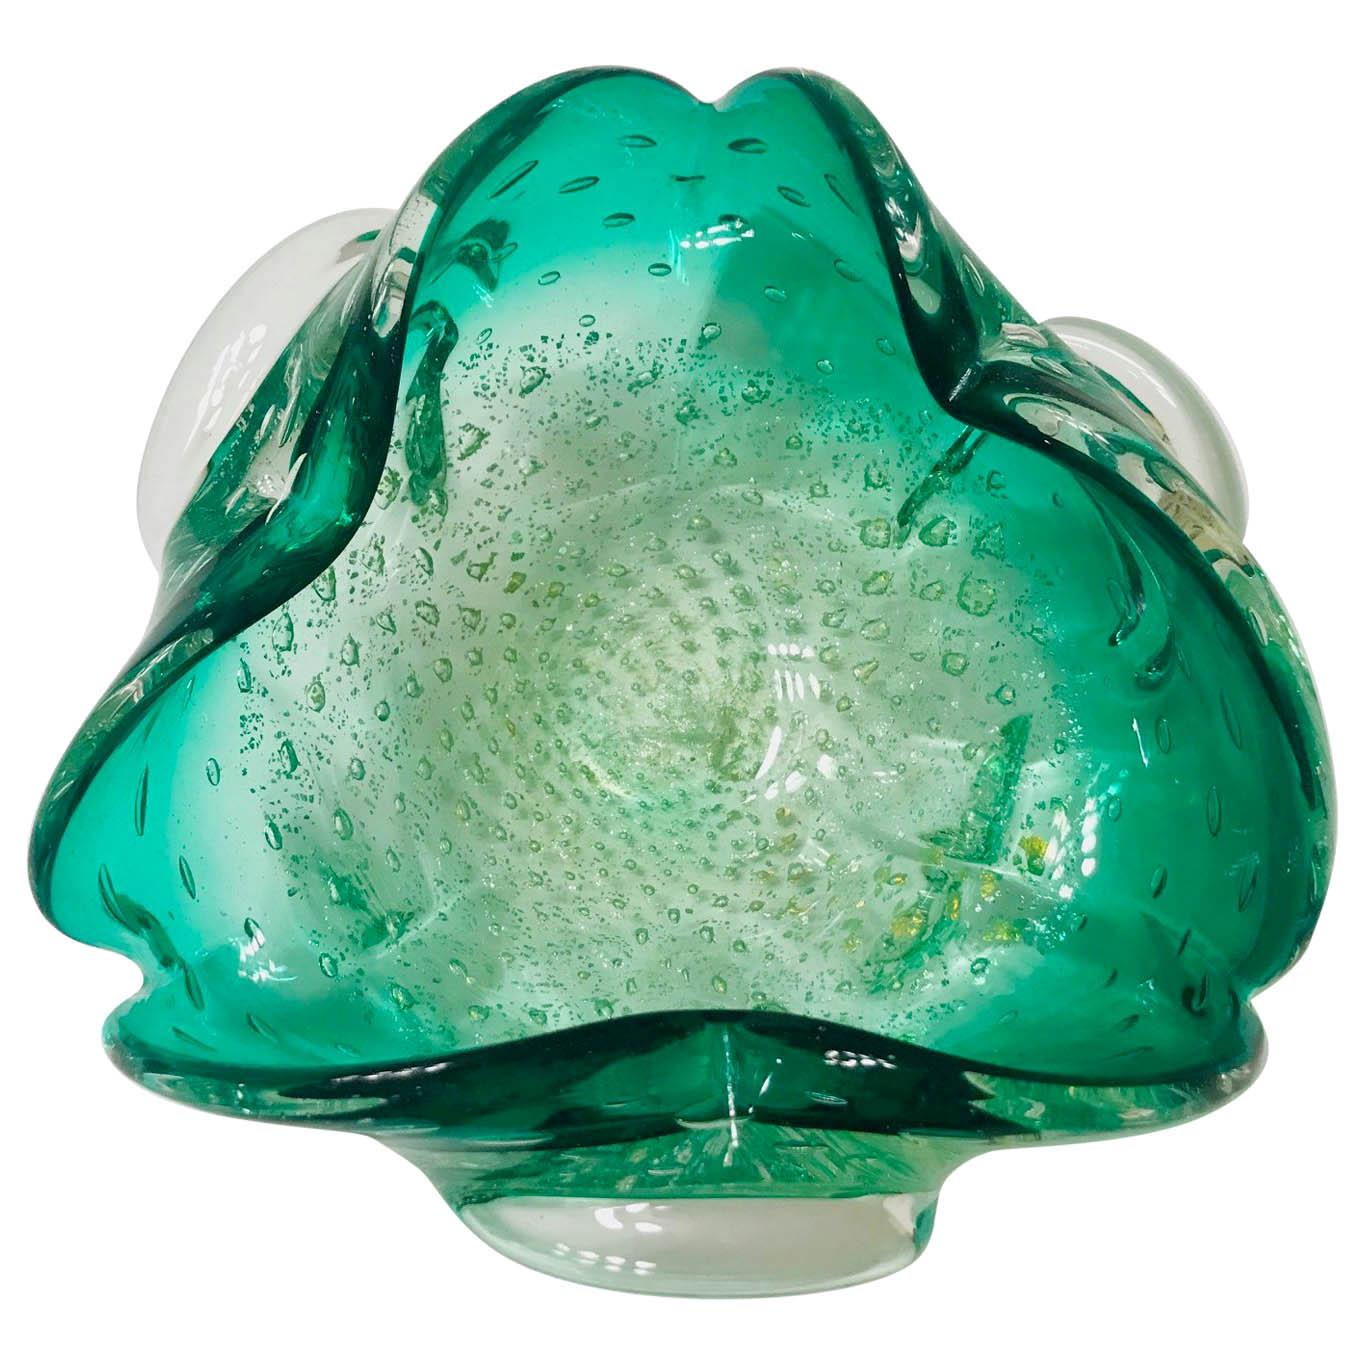 Italian Midcentury Murano Glass Bowl in Emerald Green